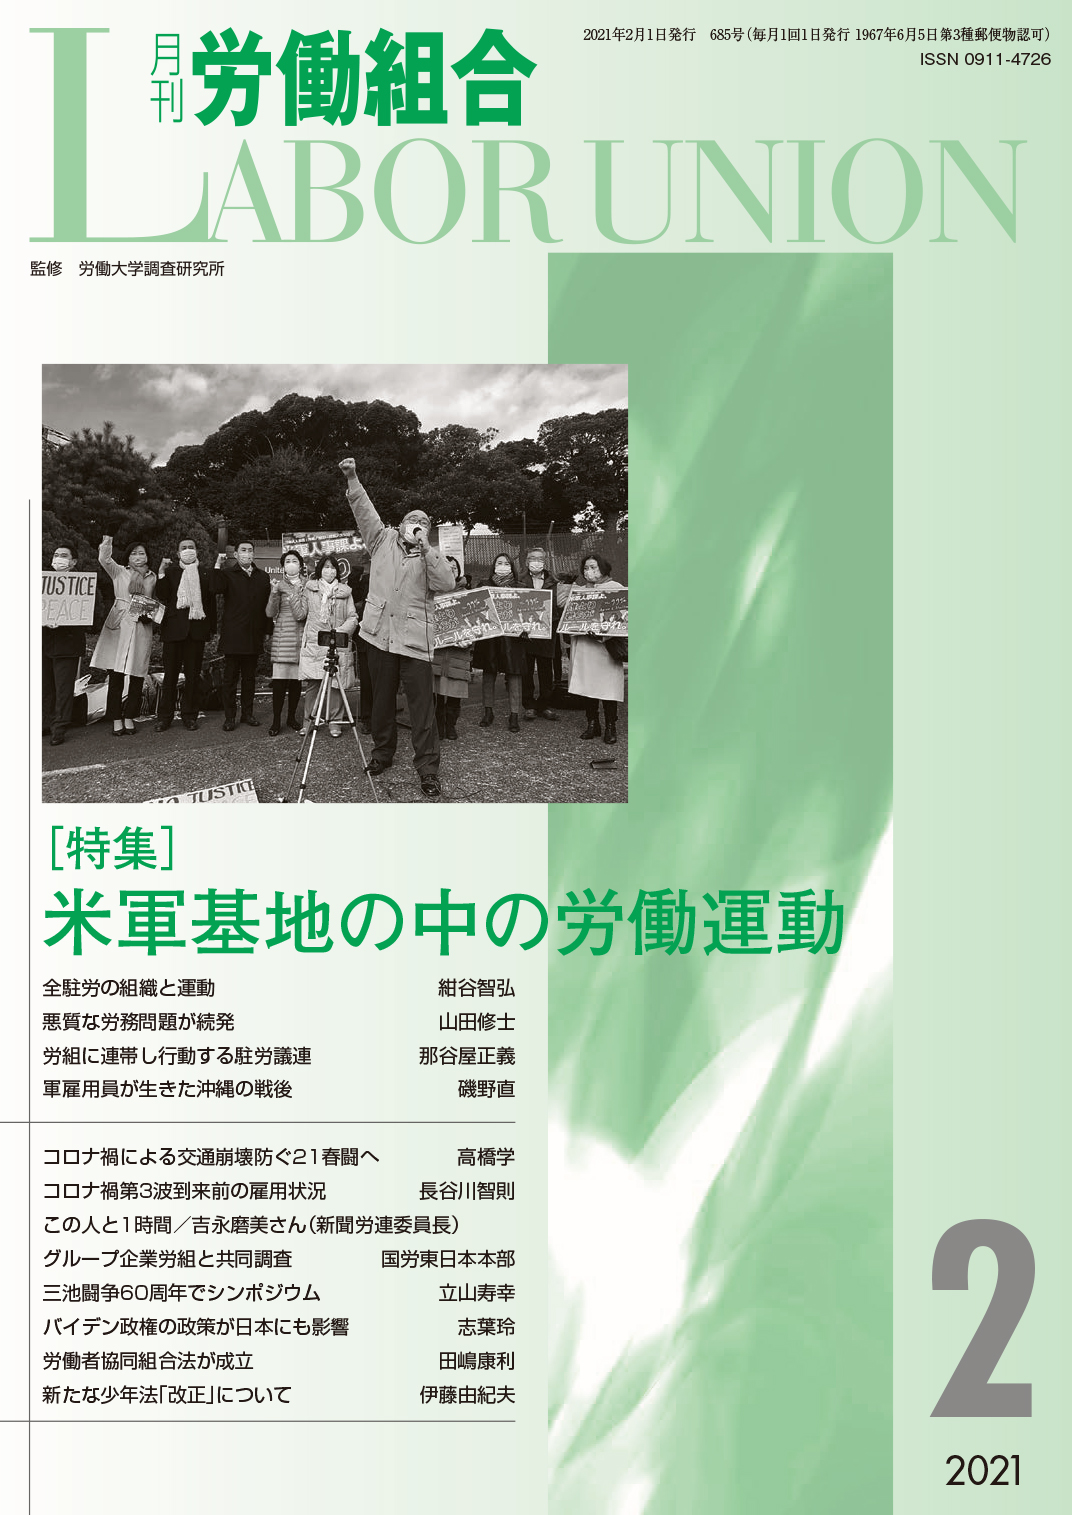 労働運動のいまを考える『月刊労働組合』;労働大学出版センター